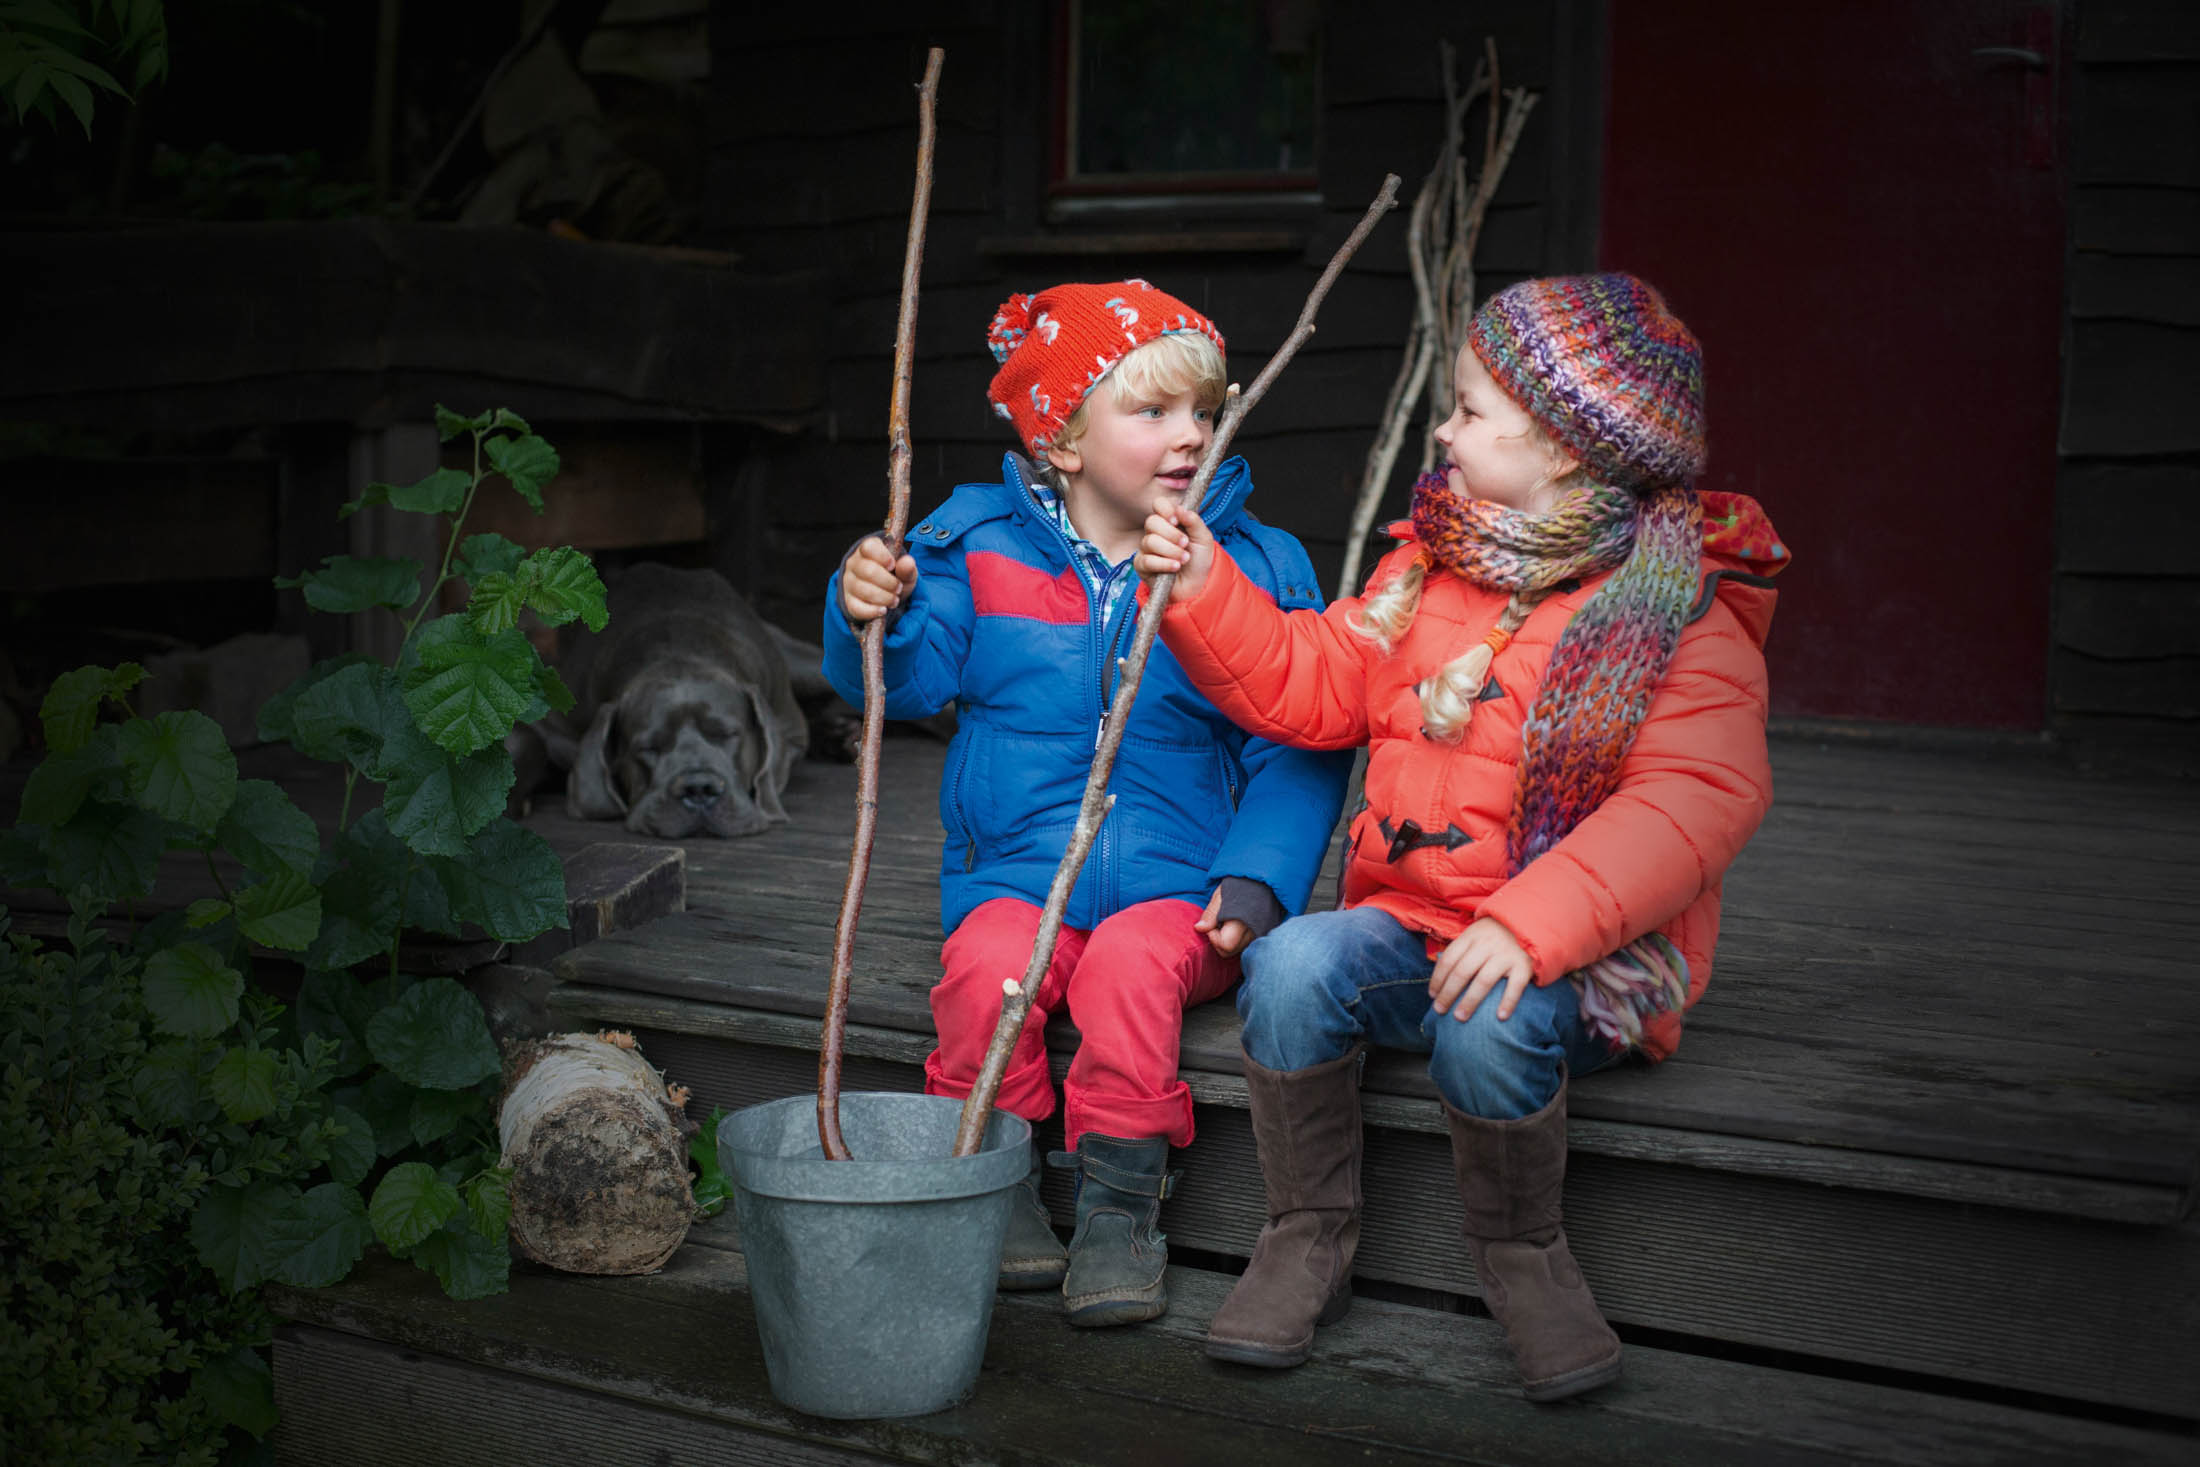 Zwei kleine Kinder in warmer Kleidung sitzen auf einer Holzveranda und halten spielerisch Stöcke in der Hand. Im Hintergrund liegt ein Hund bei einem Haus. Sie interagieren fröhlich miteinander. © Fotografie Tomas Rodriguez